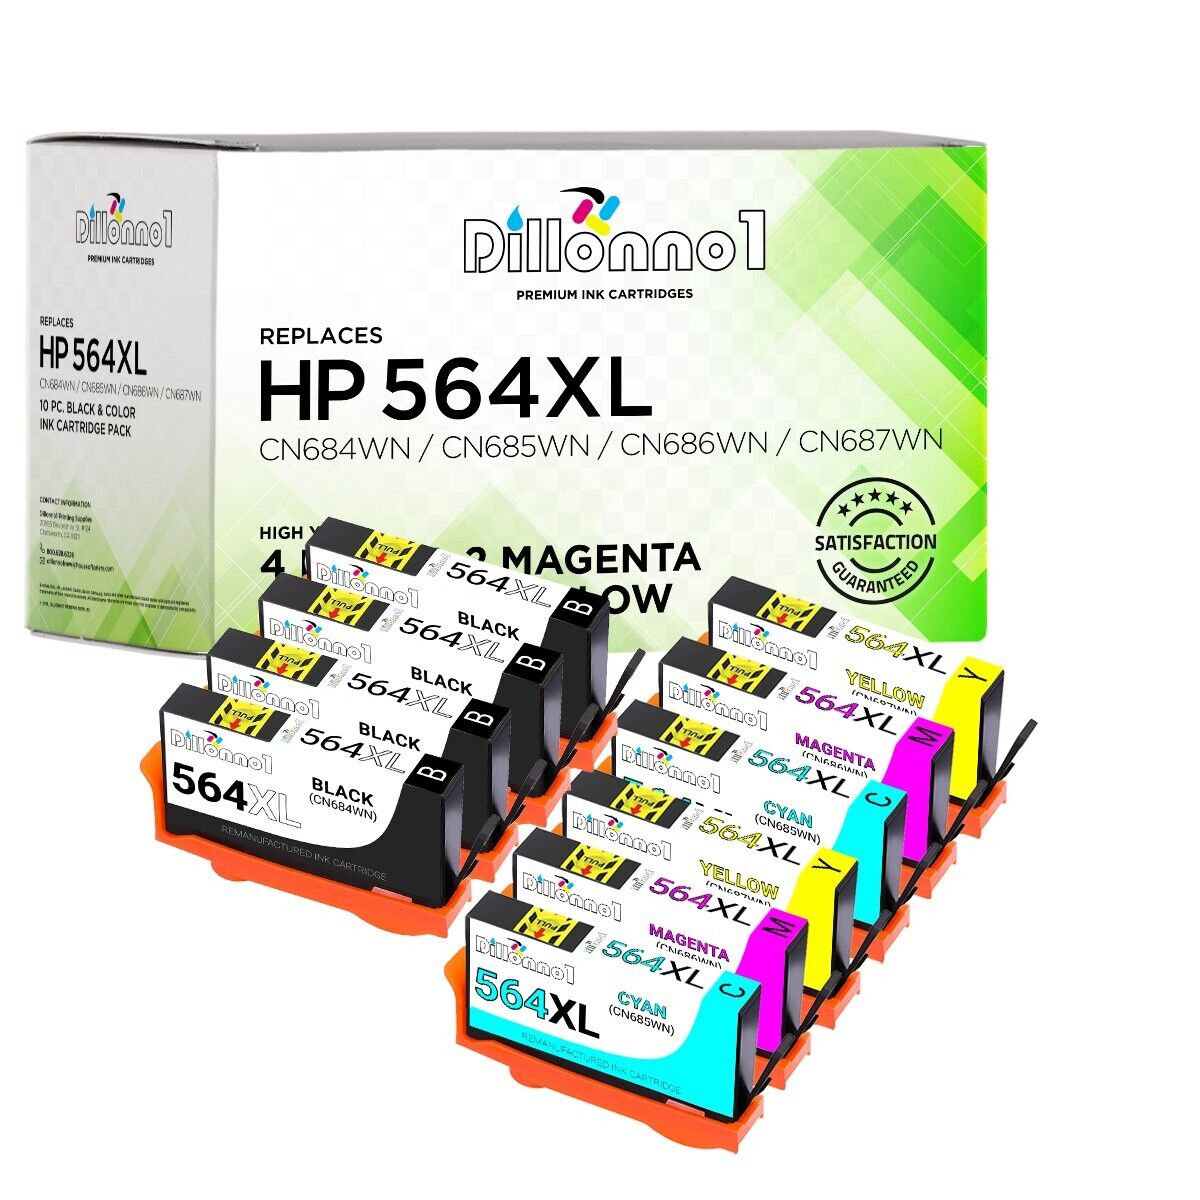 10pk For HP564 XL Ink For Deskjet 3070a 3520 3521 3522 3526 Officejet 4620 4622